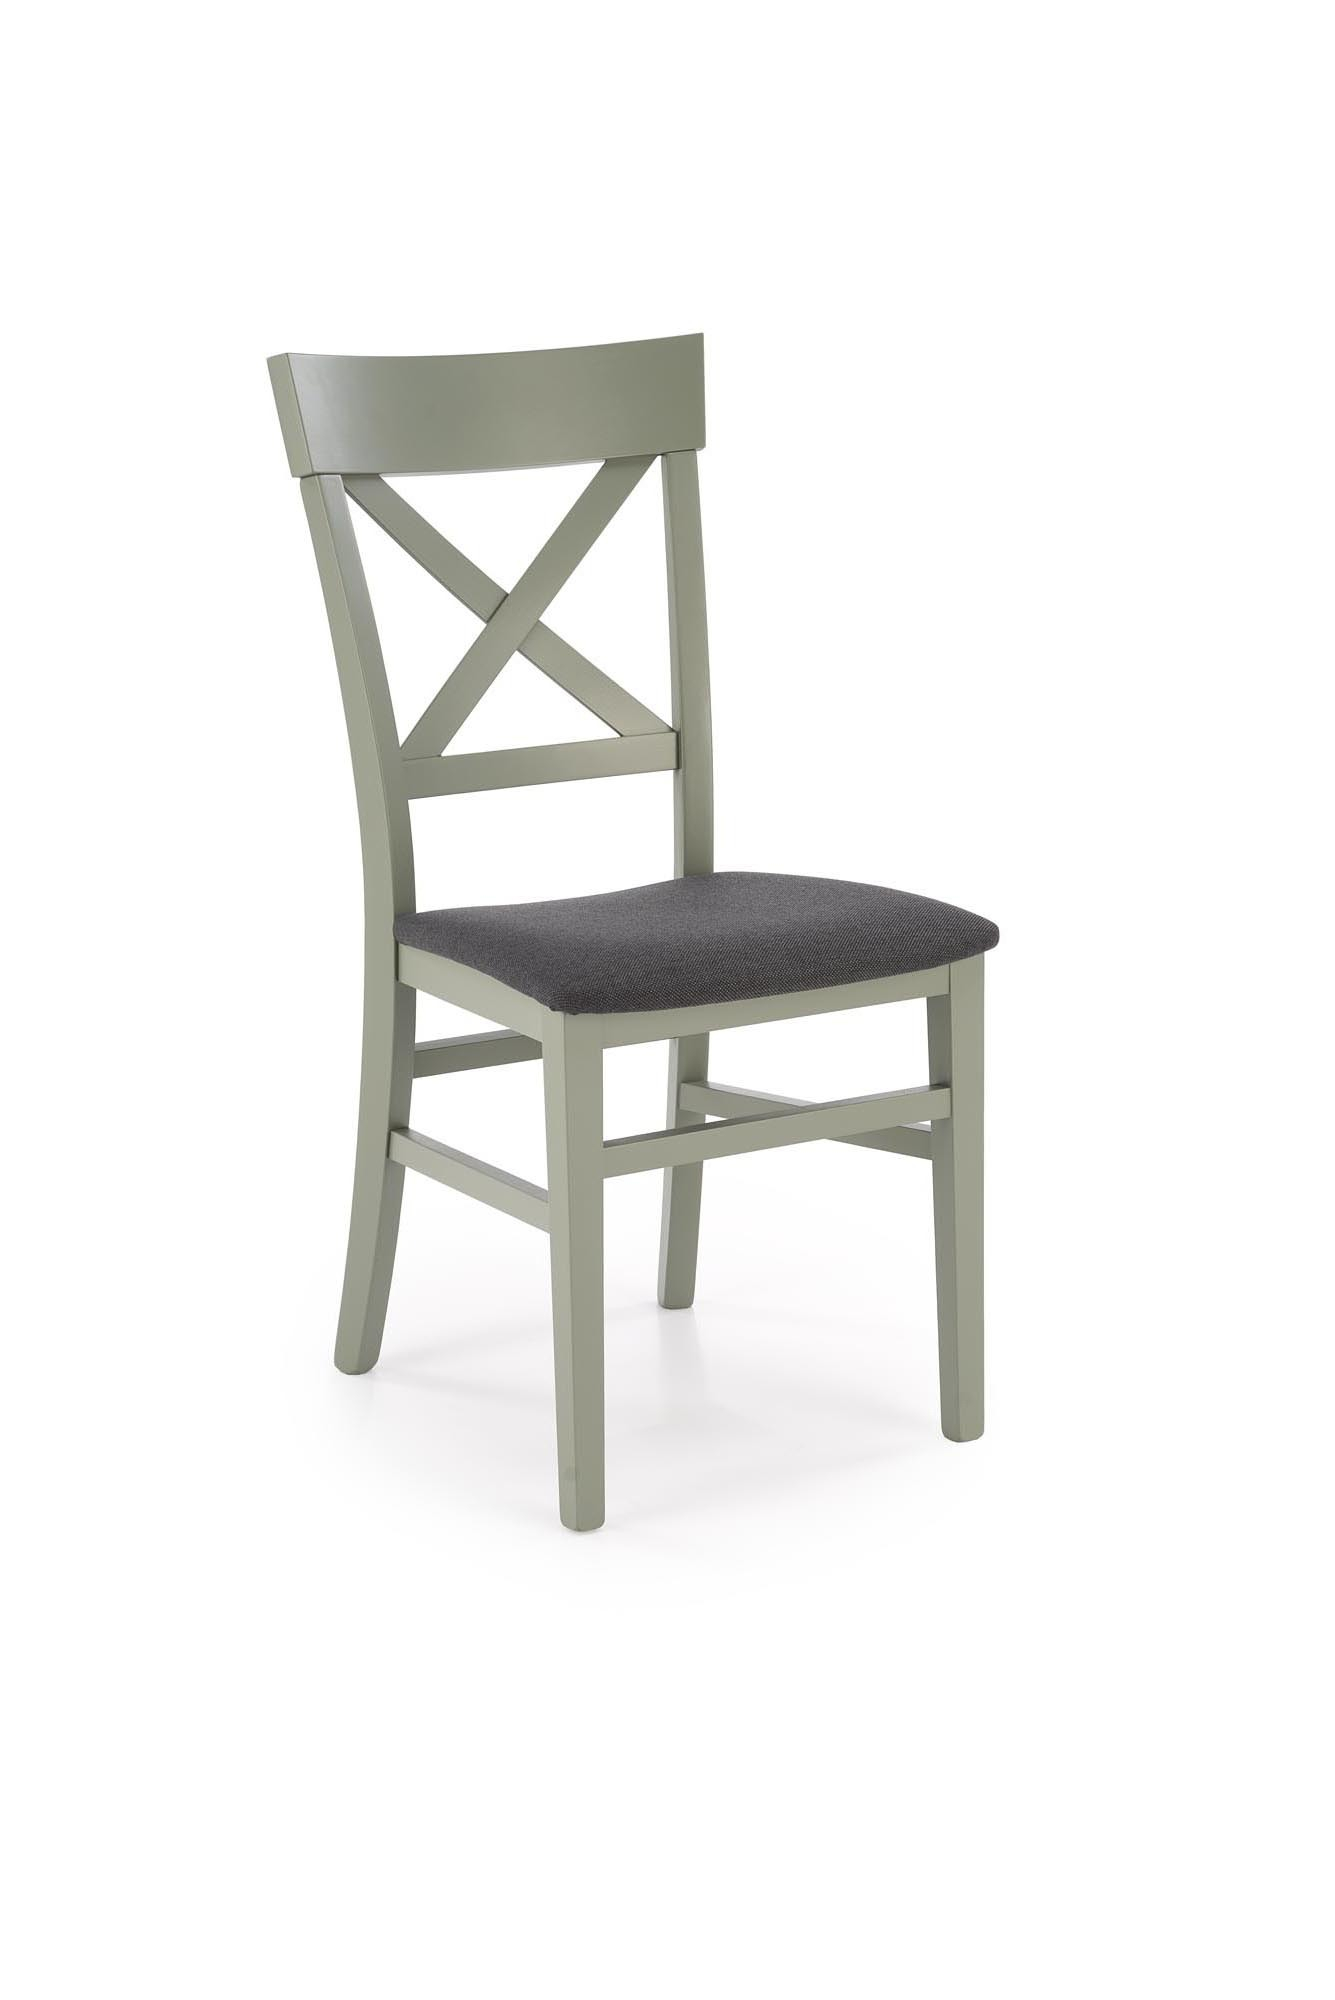 TUTTI 2 krzesło szaro-zielony / tap: Inari 95